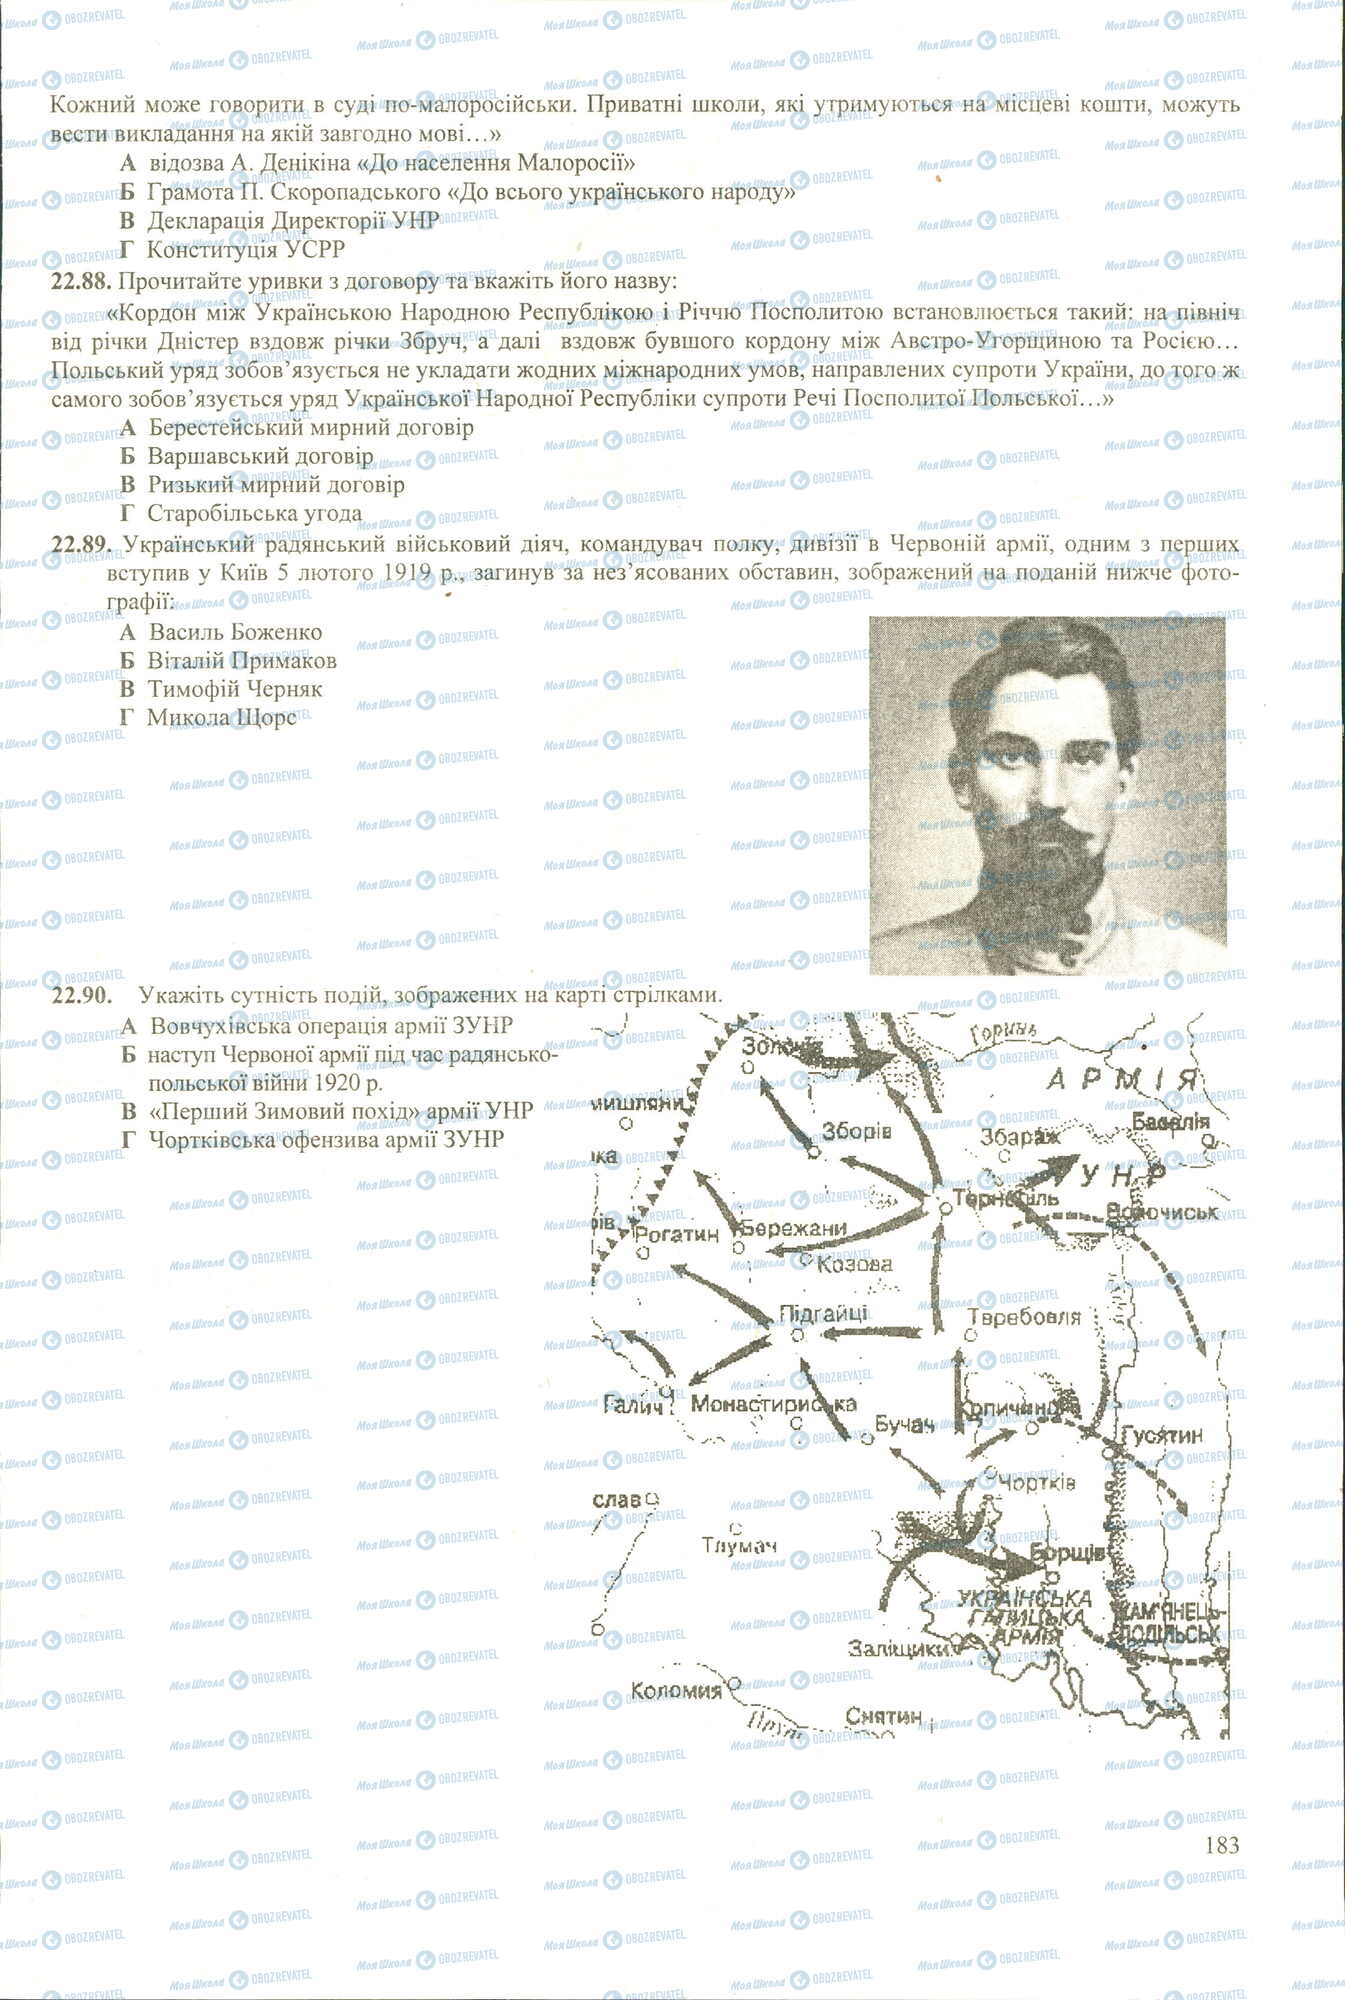 ЗНО История Украины 11 класс страница 88-90